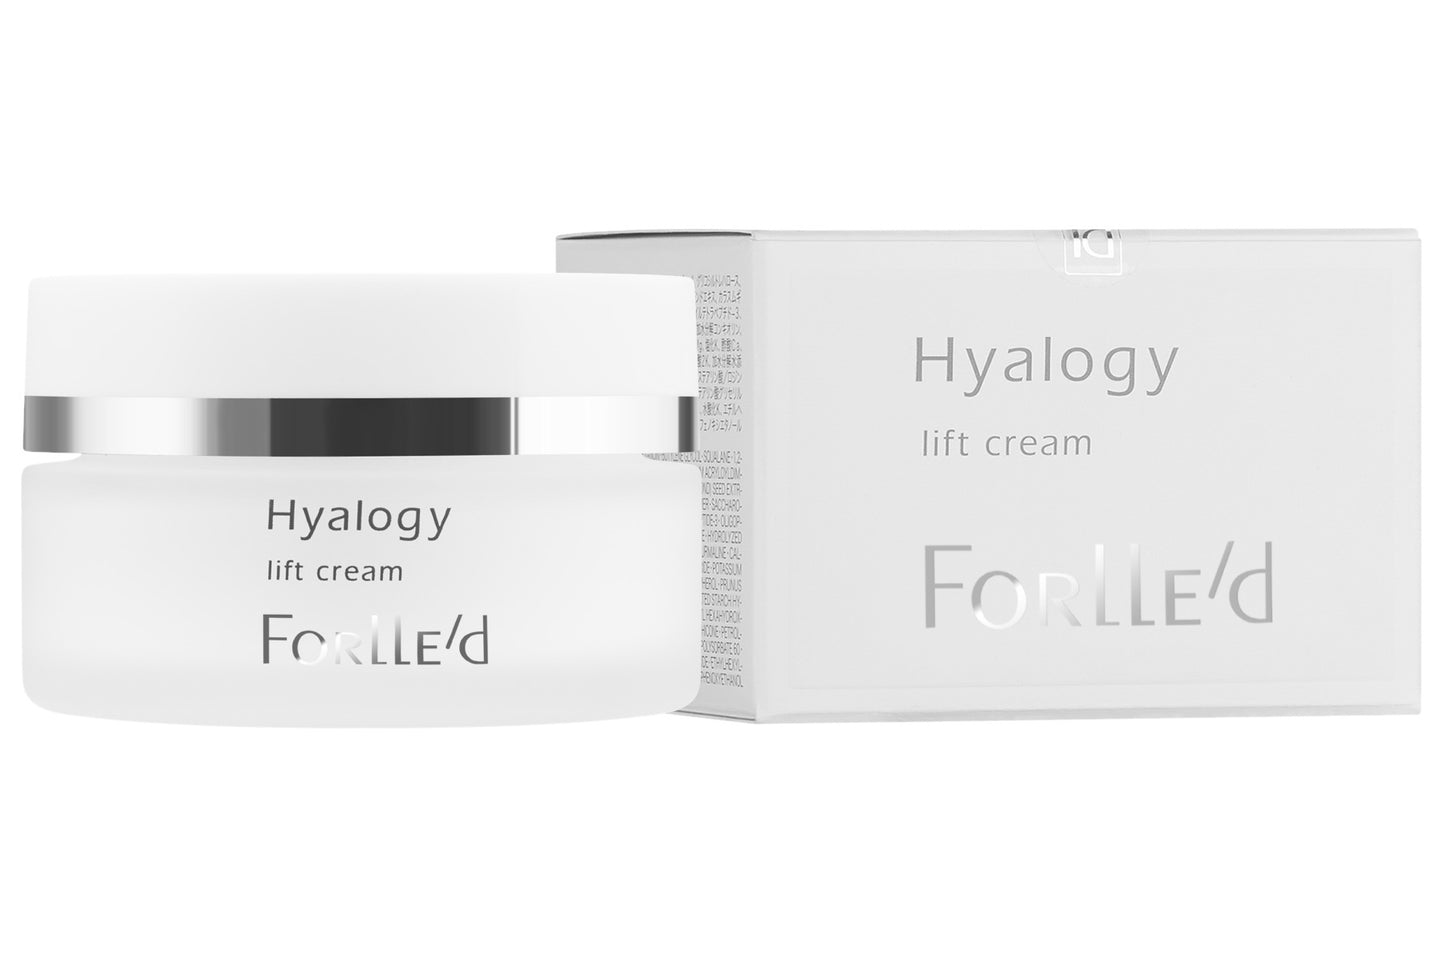 Forlle'd Hyalogy Lift Cream 50 ml